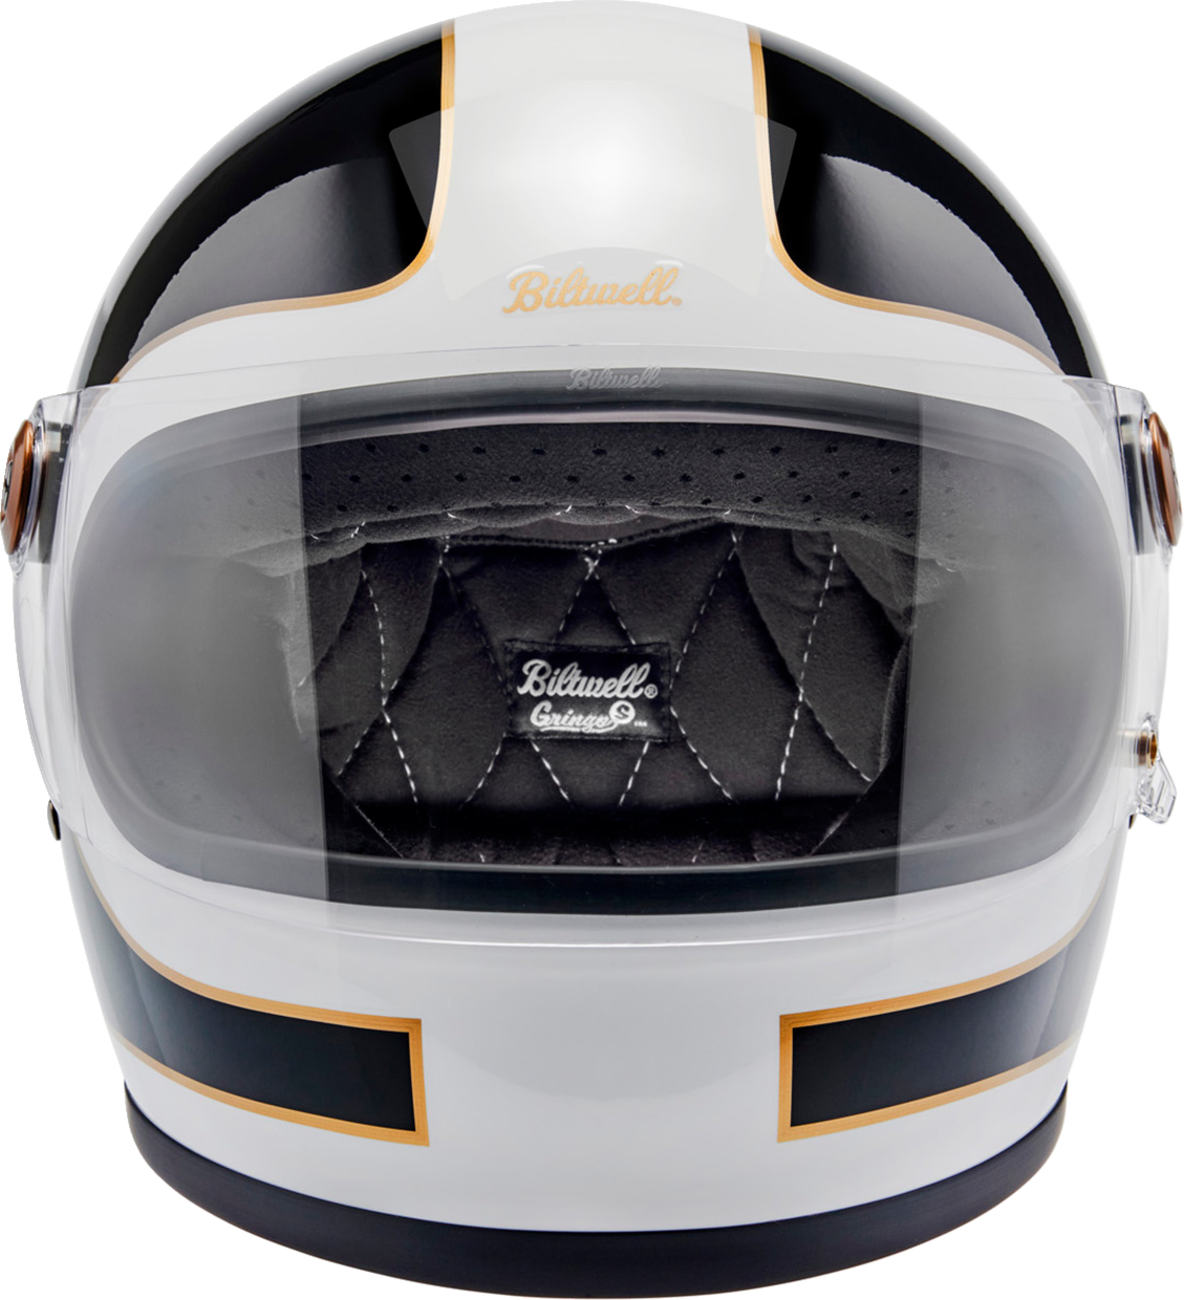 BILTWELL Gringo S Helmet - Gloss White/Black Tracker - Large 1003-566-504